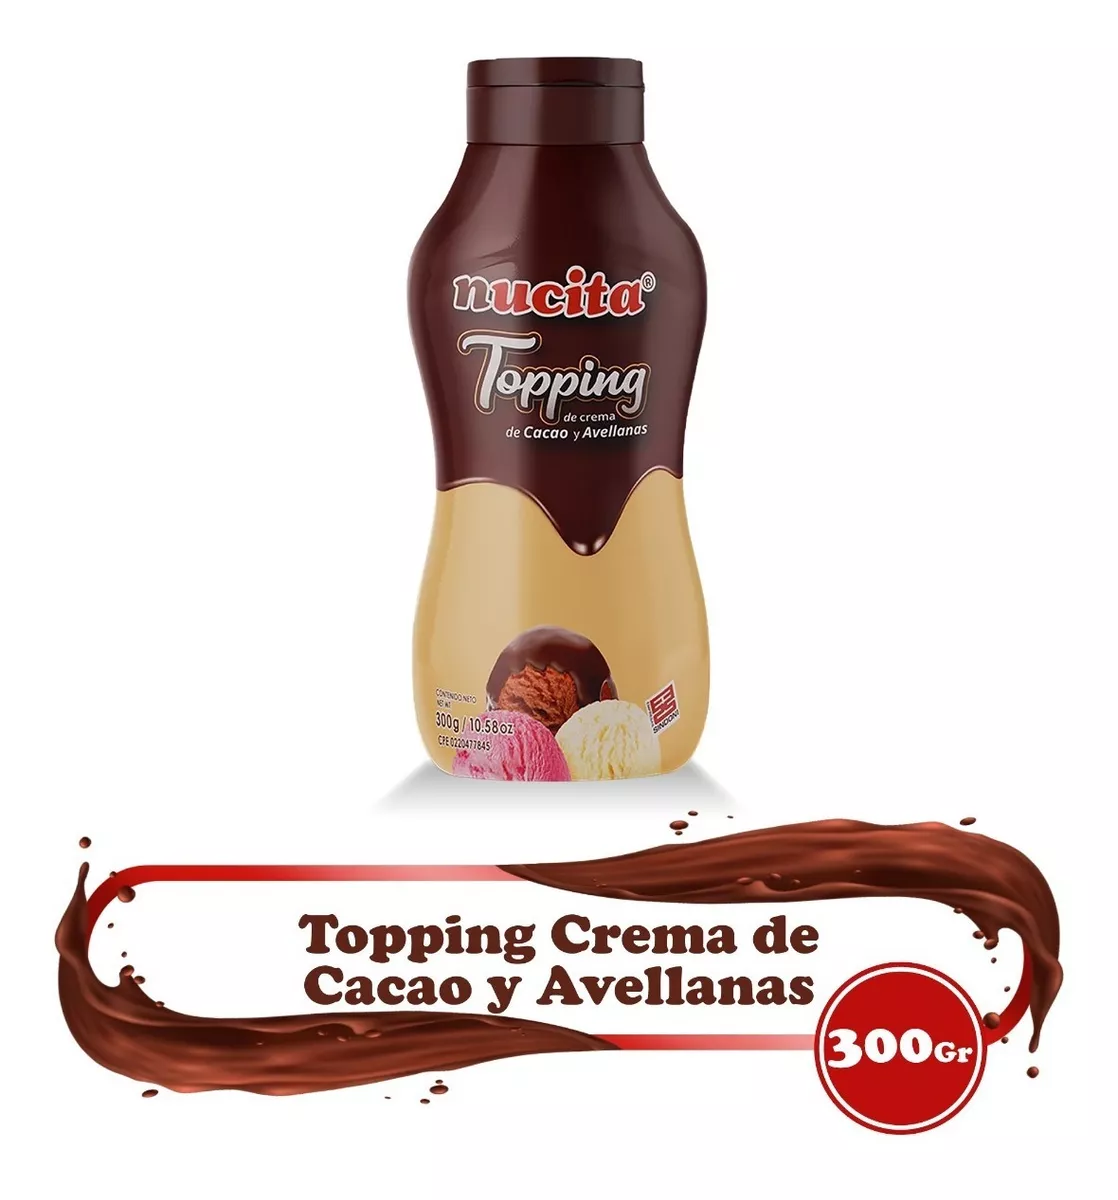 Nucita Topping Untable Crema De Cacao Y Avellanas 300g